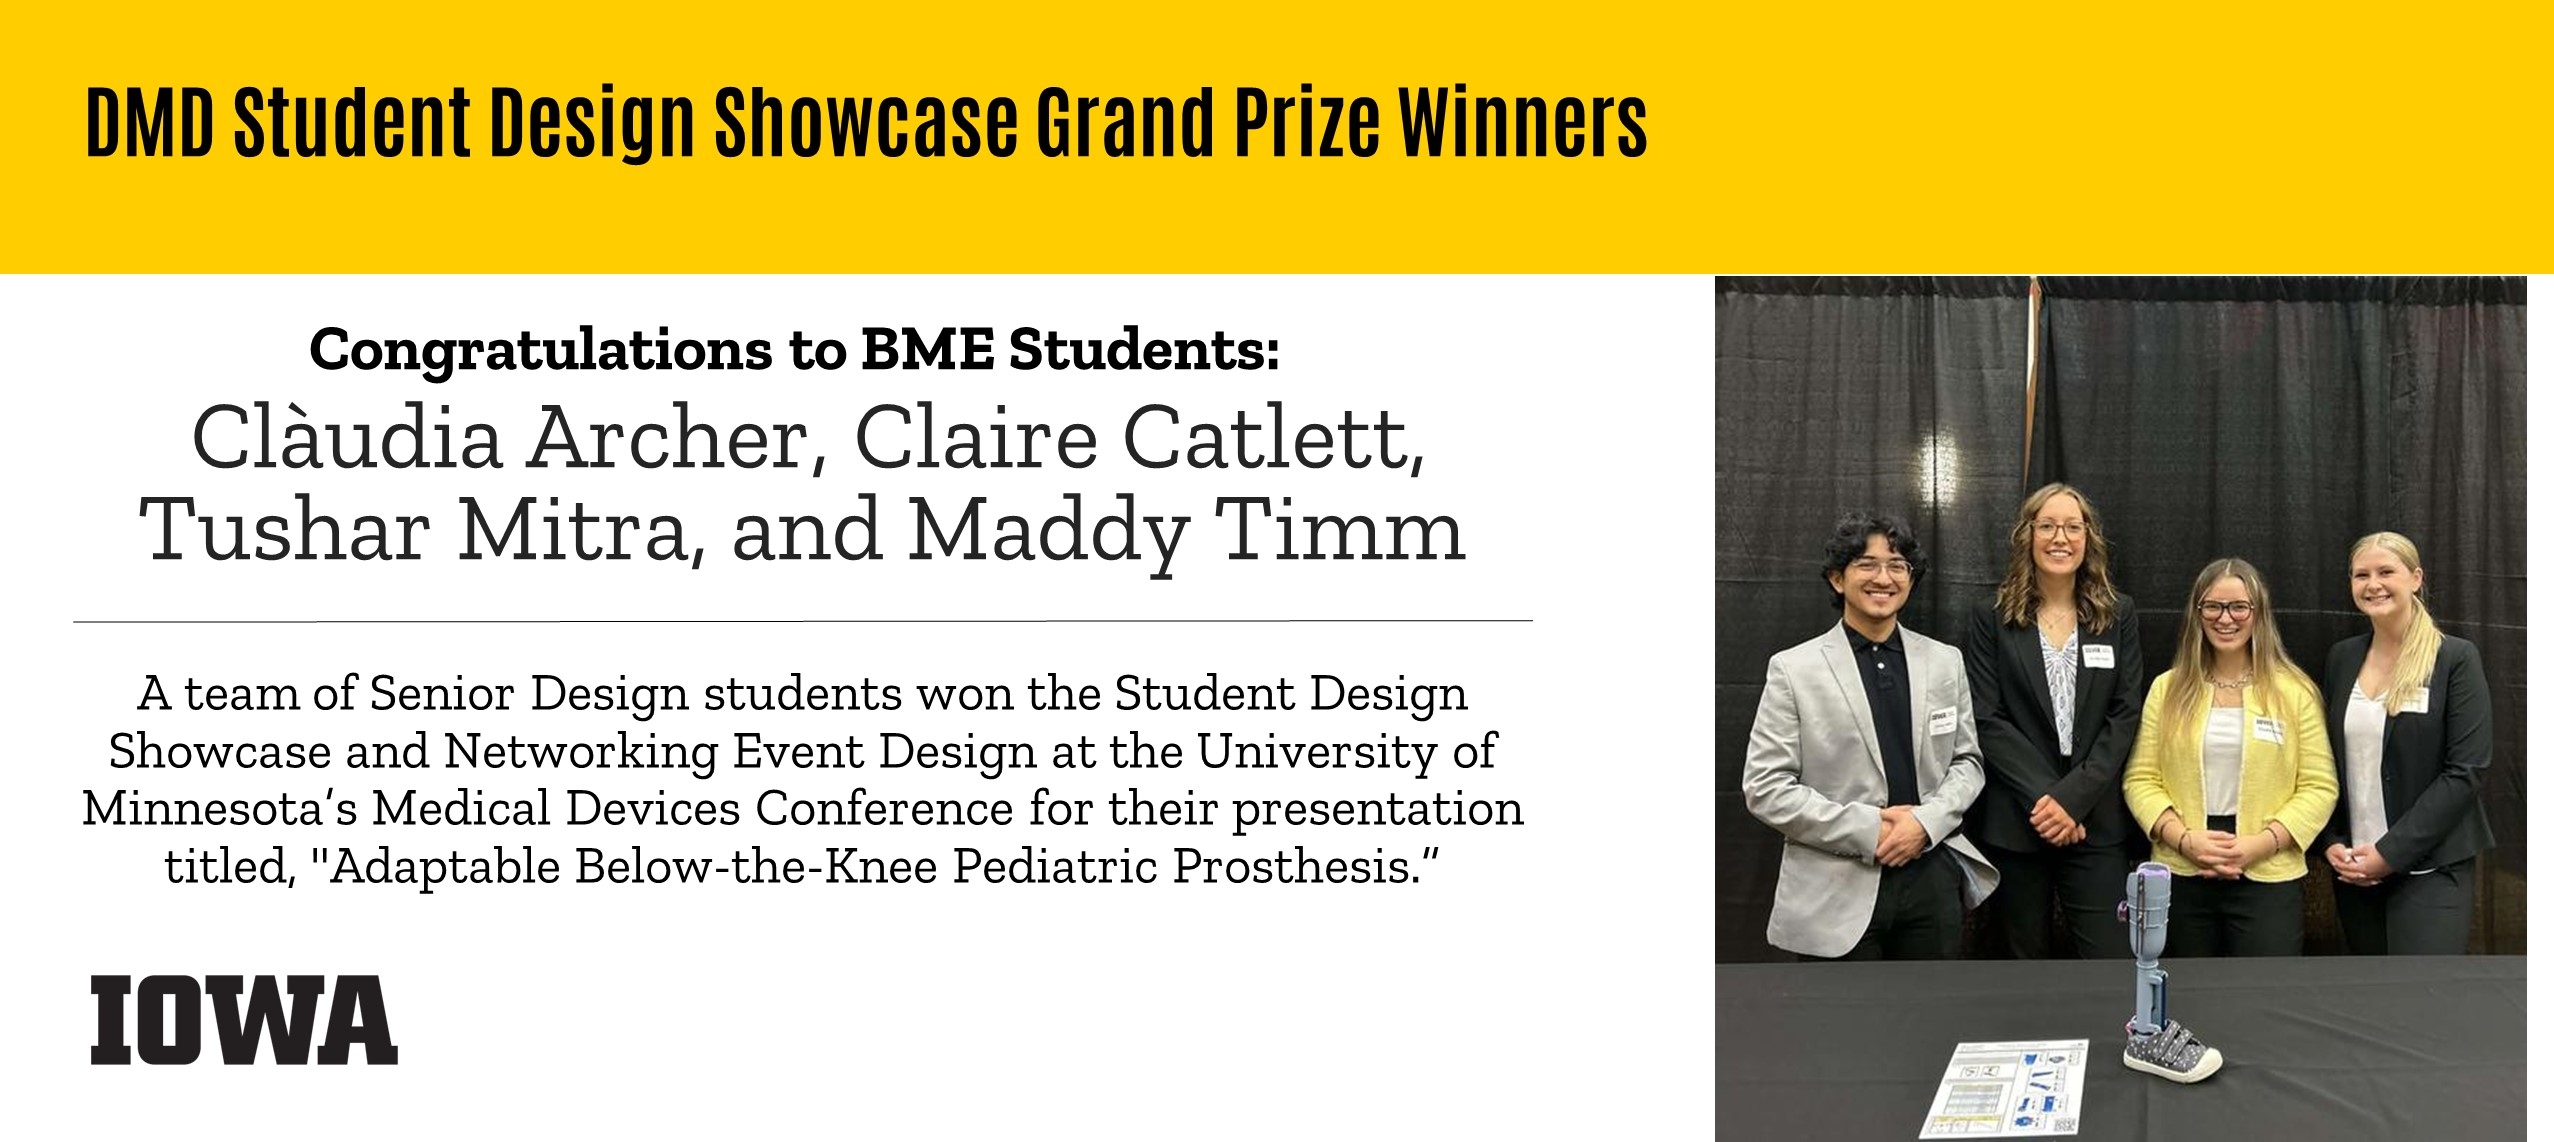 BME Student Design Showcase Grand Prize Winners